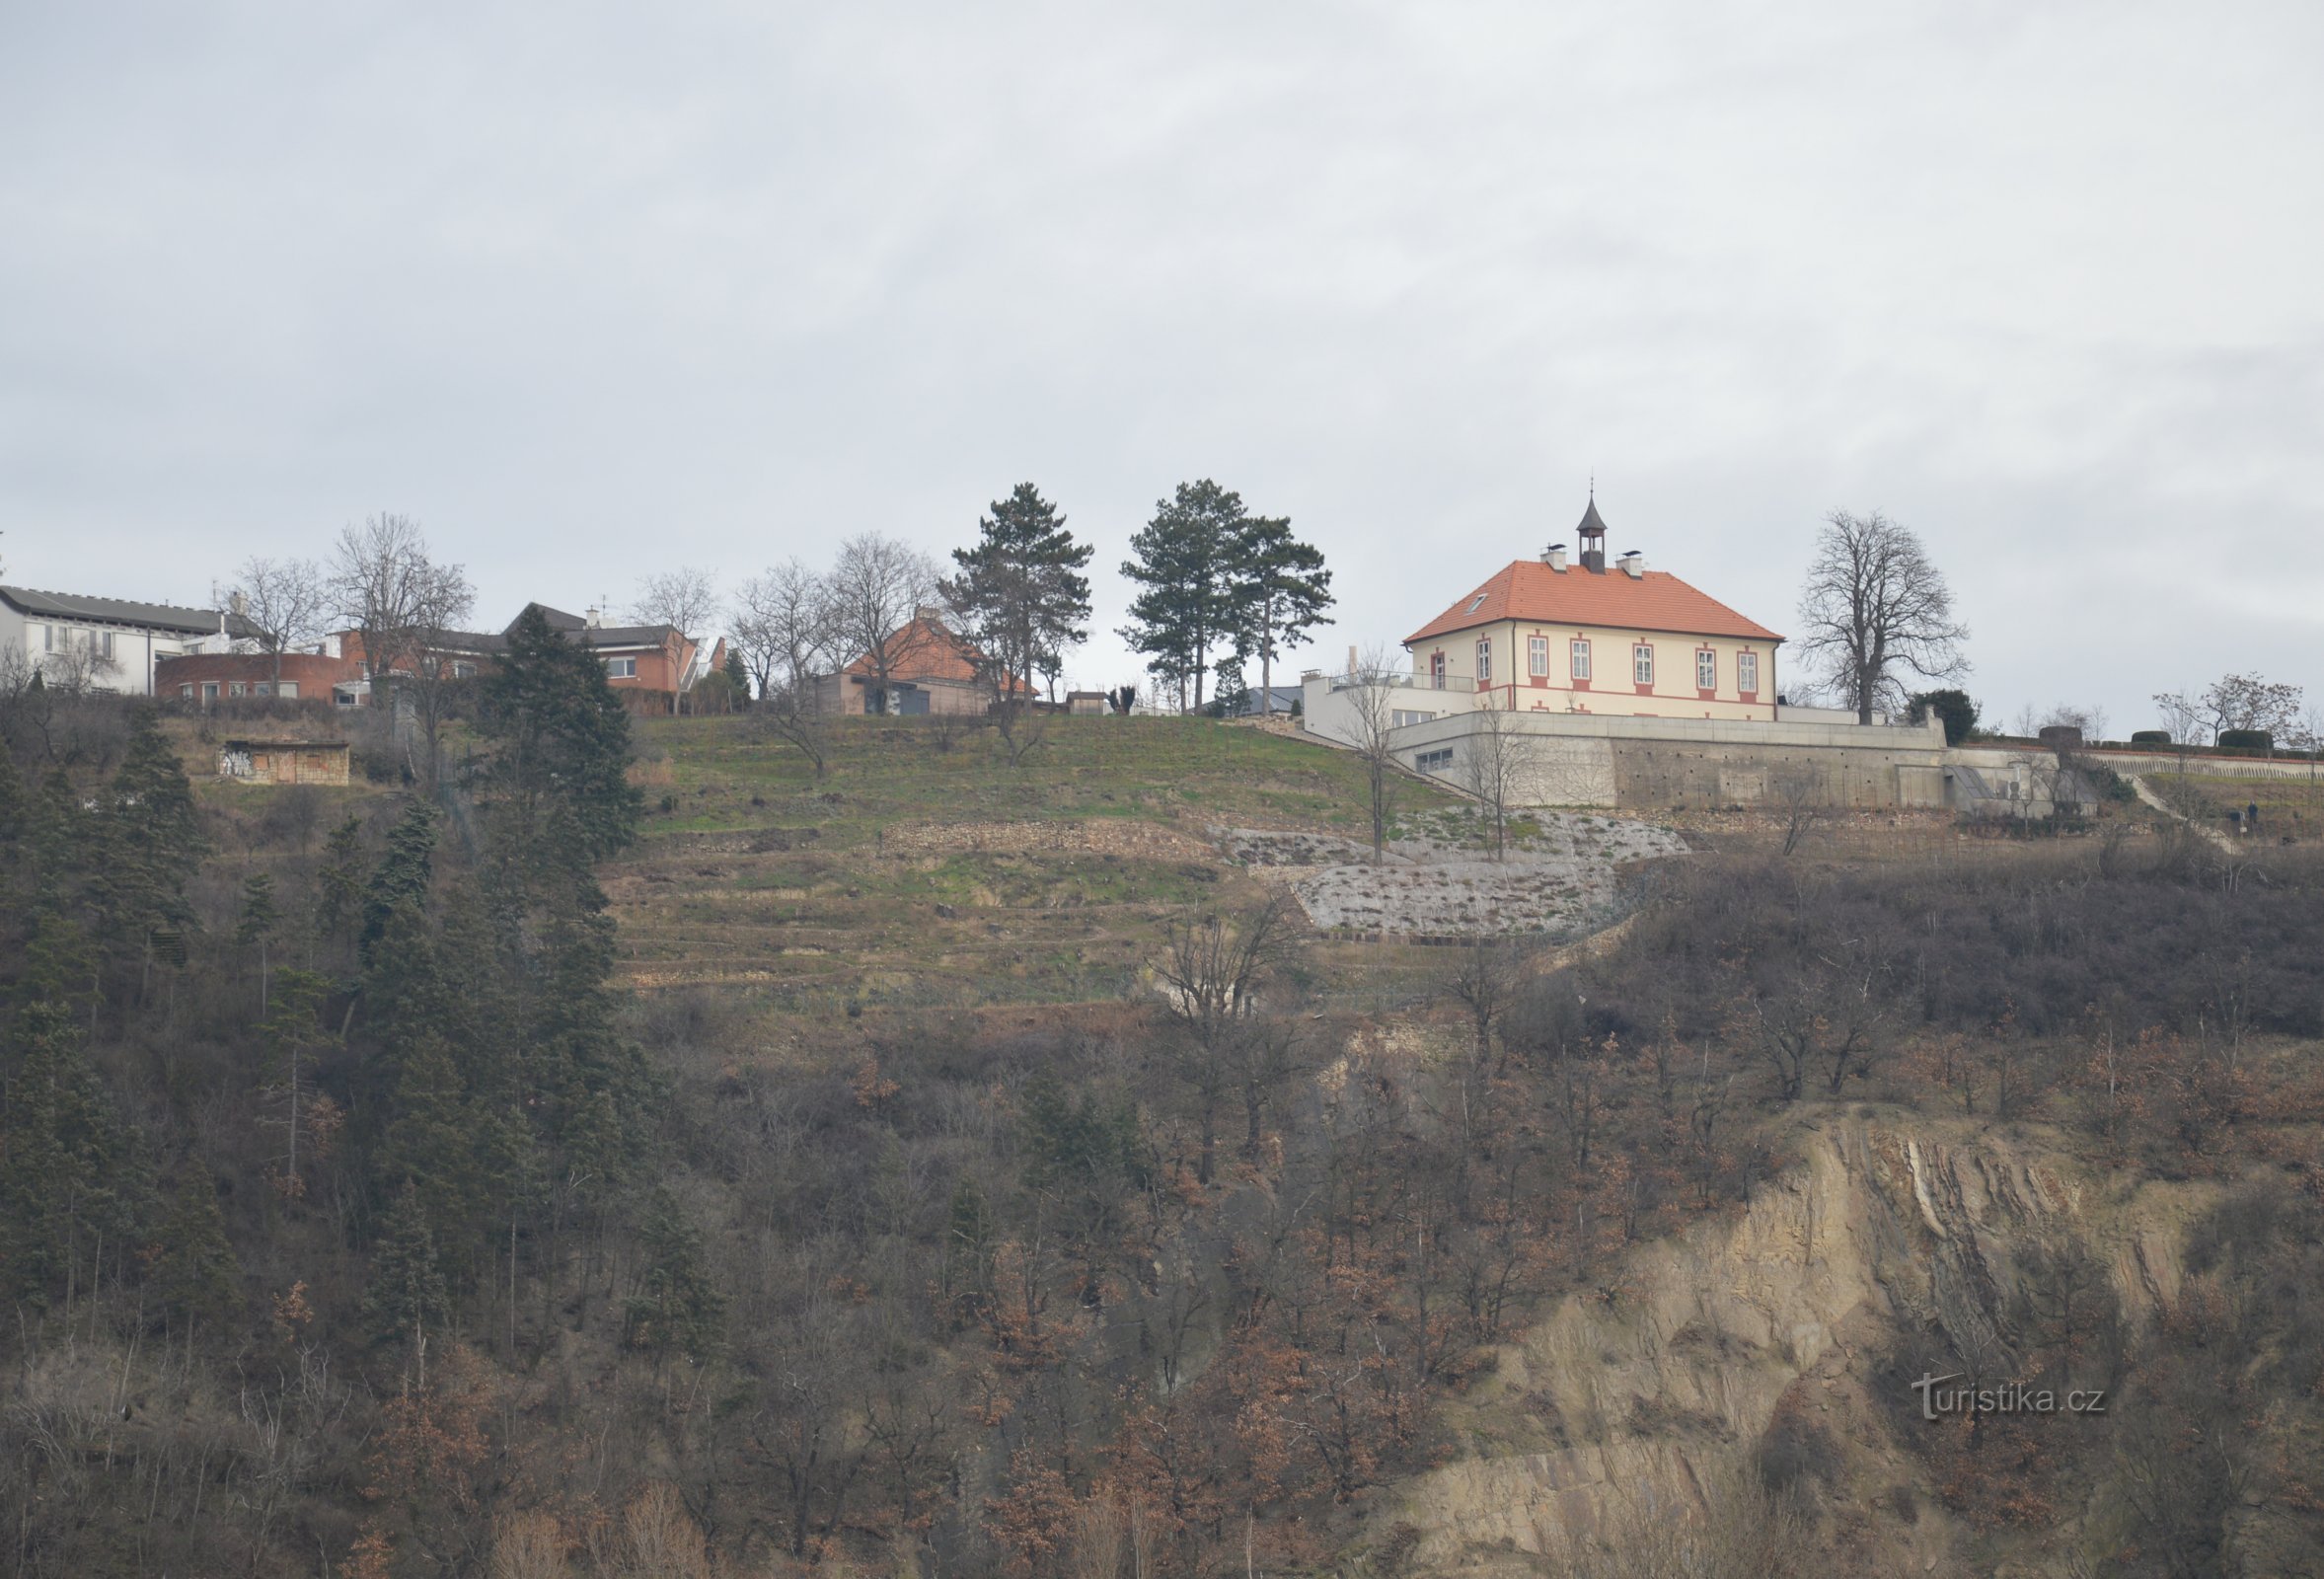 Lâu đài Jablůňka có vườn